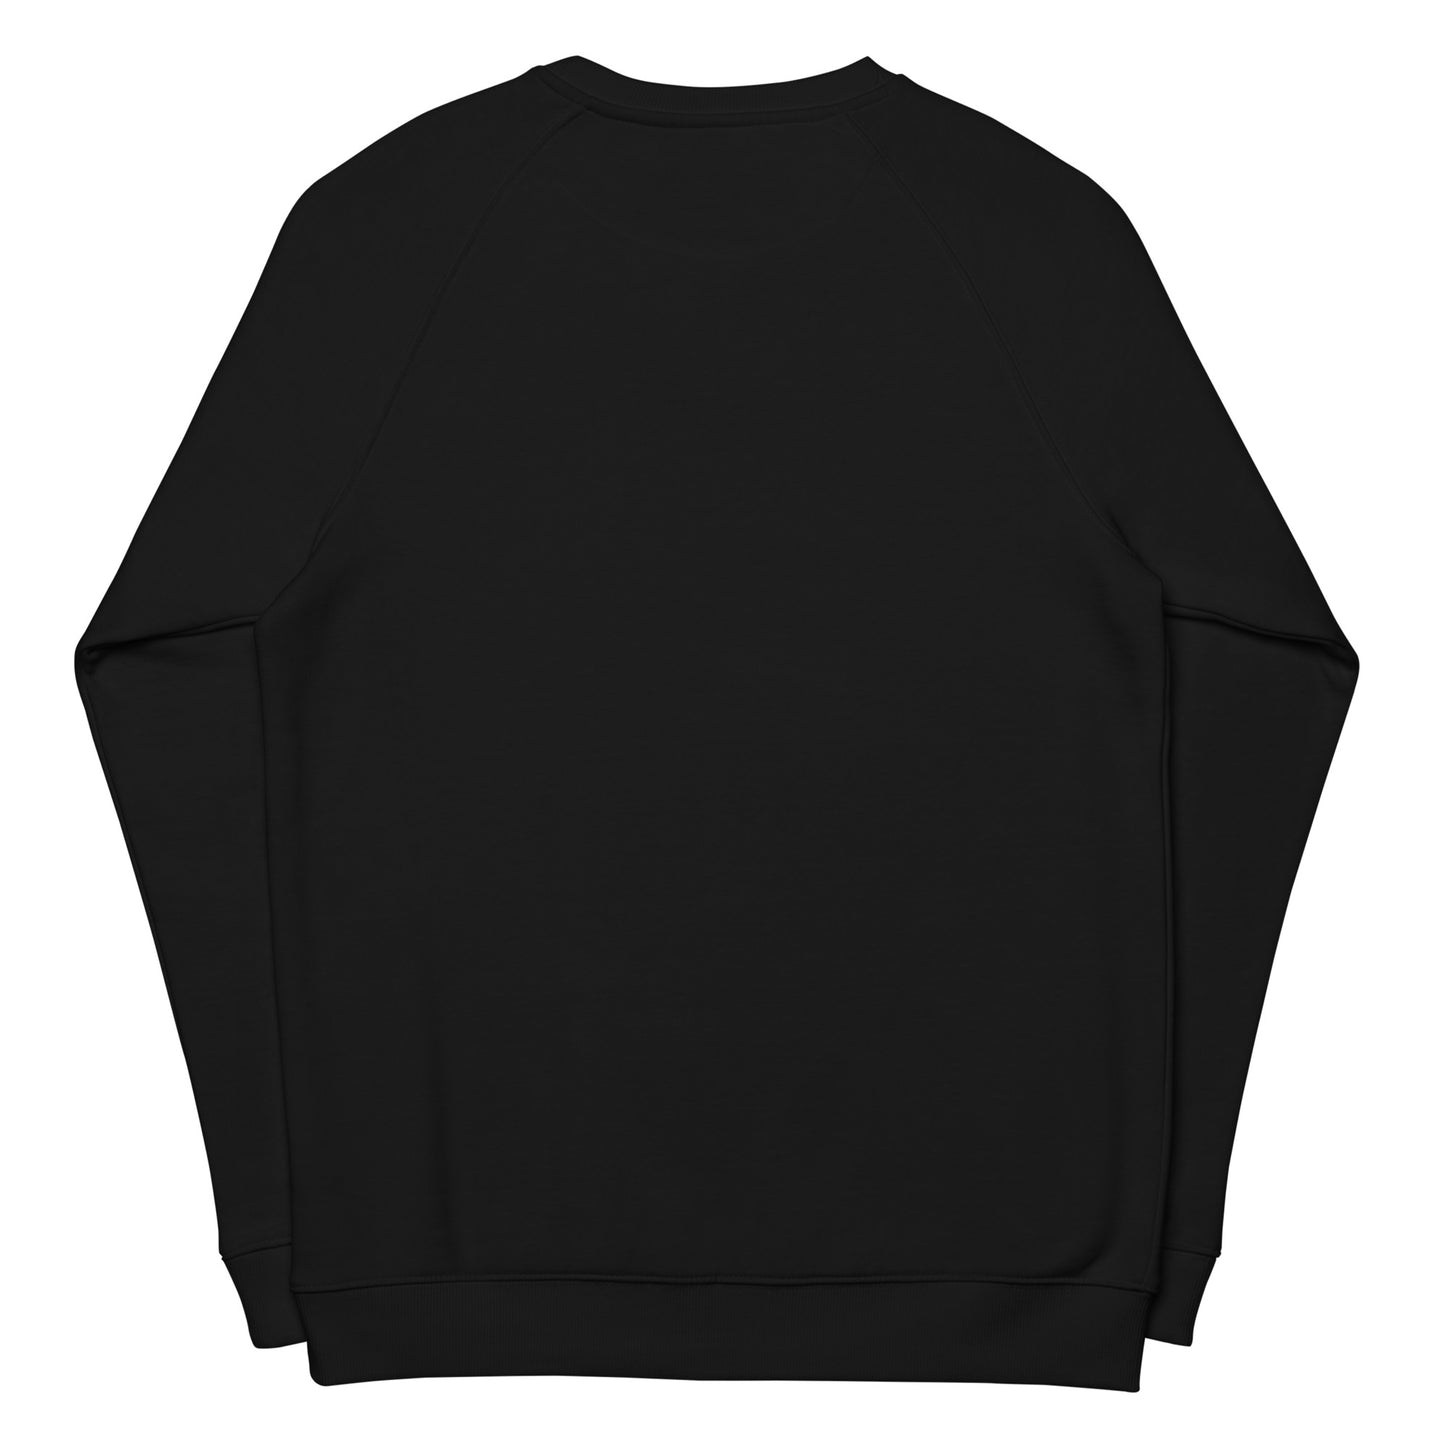 ZYDECO BADGE - Unisex organic raglan sweatshirt